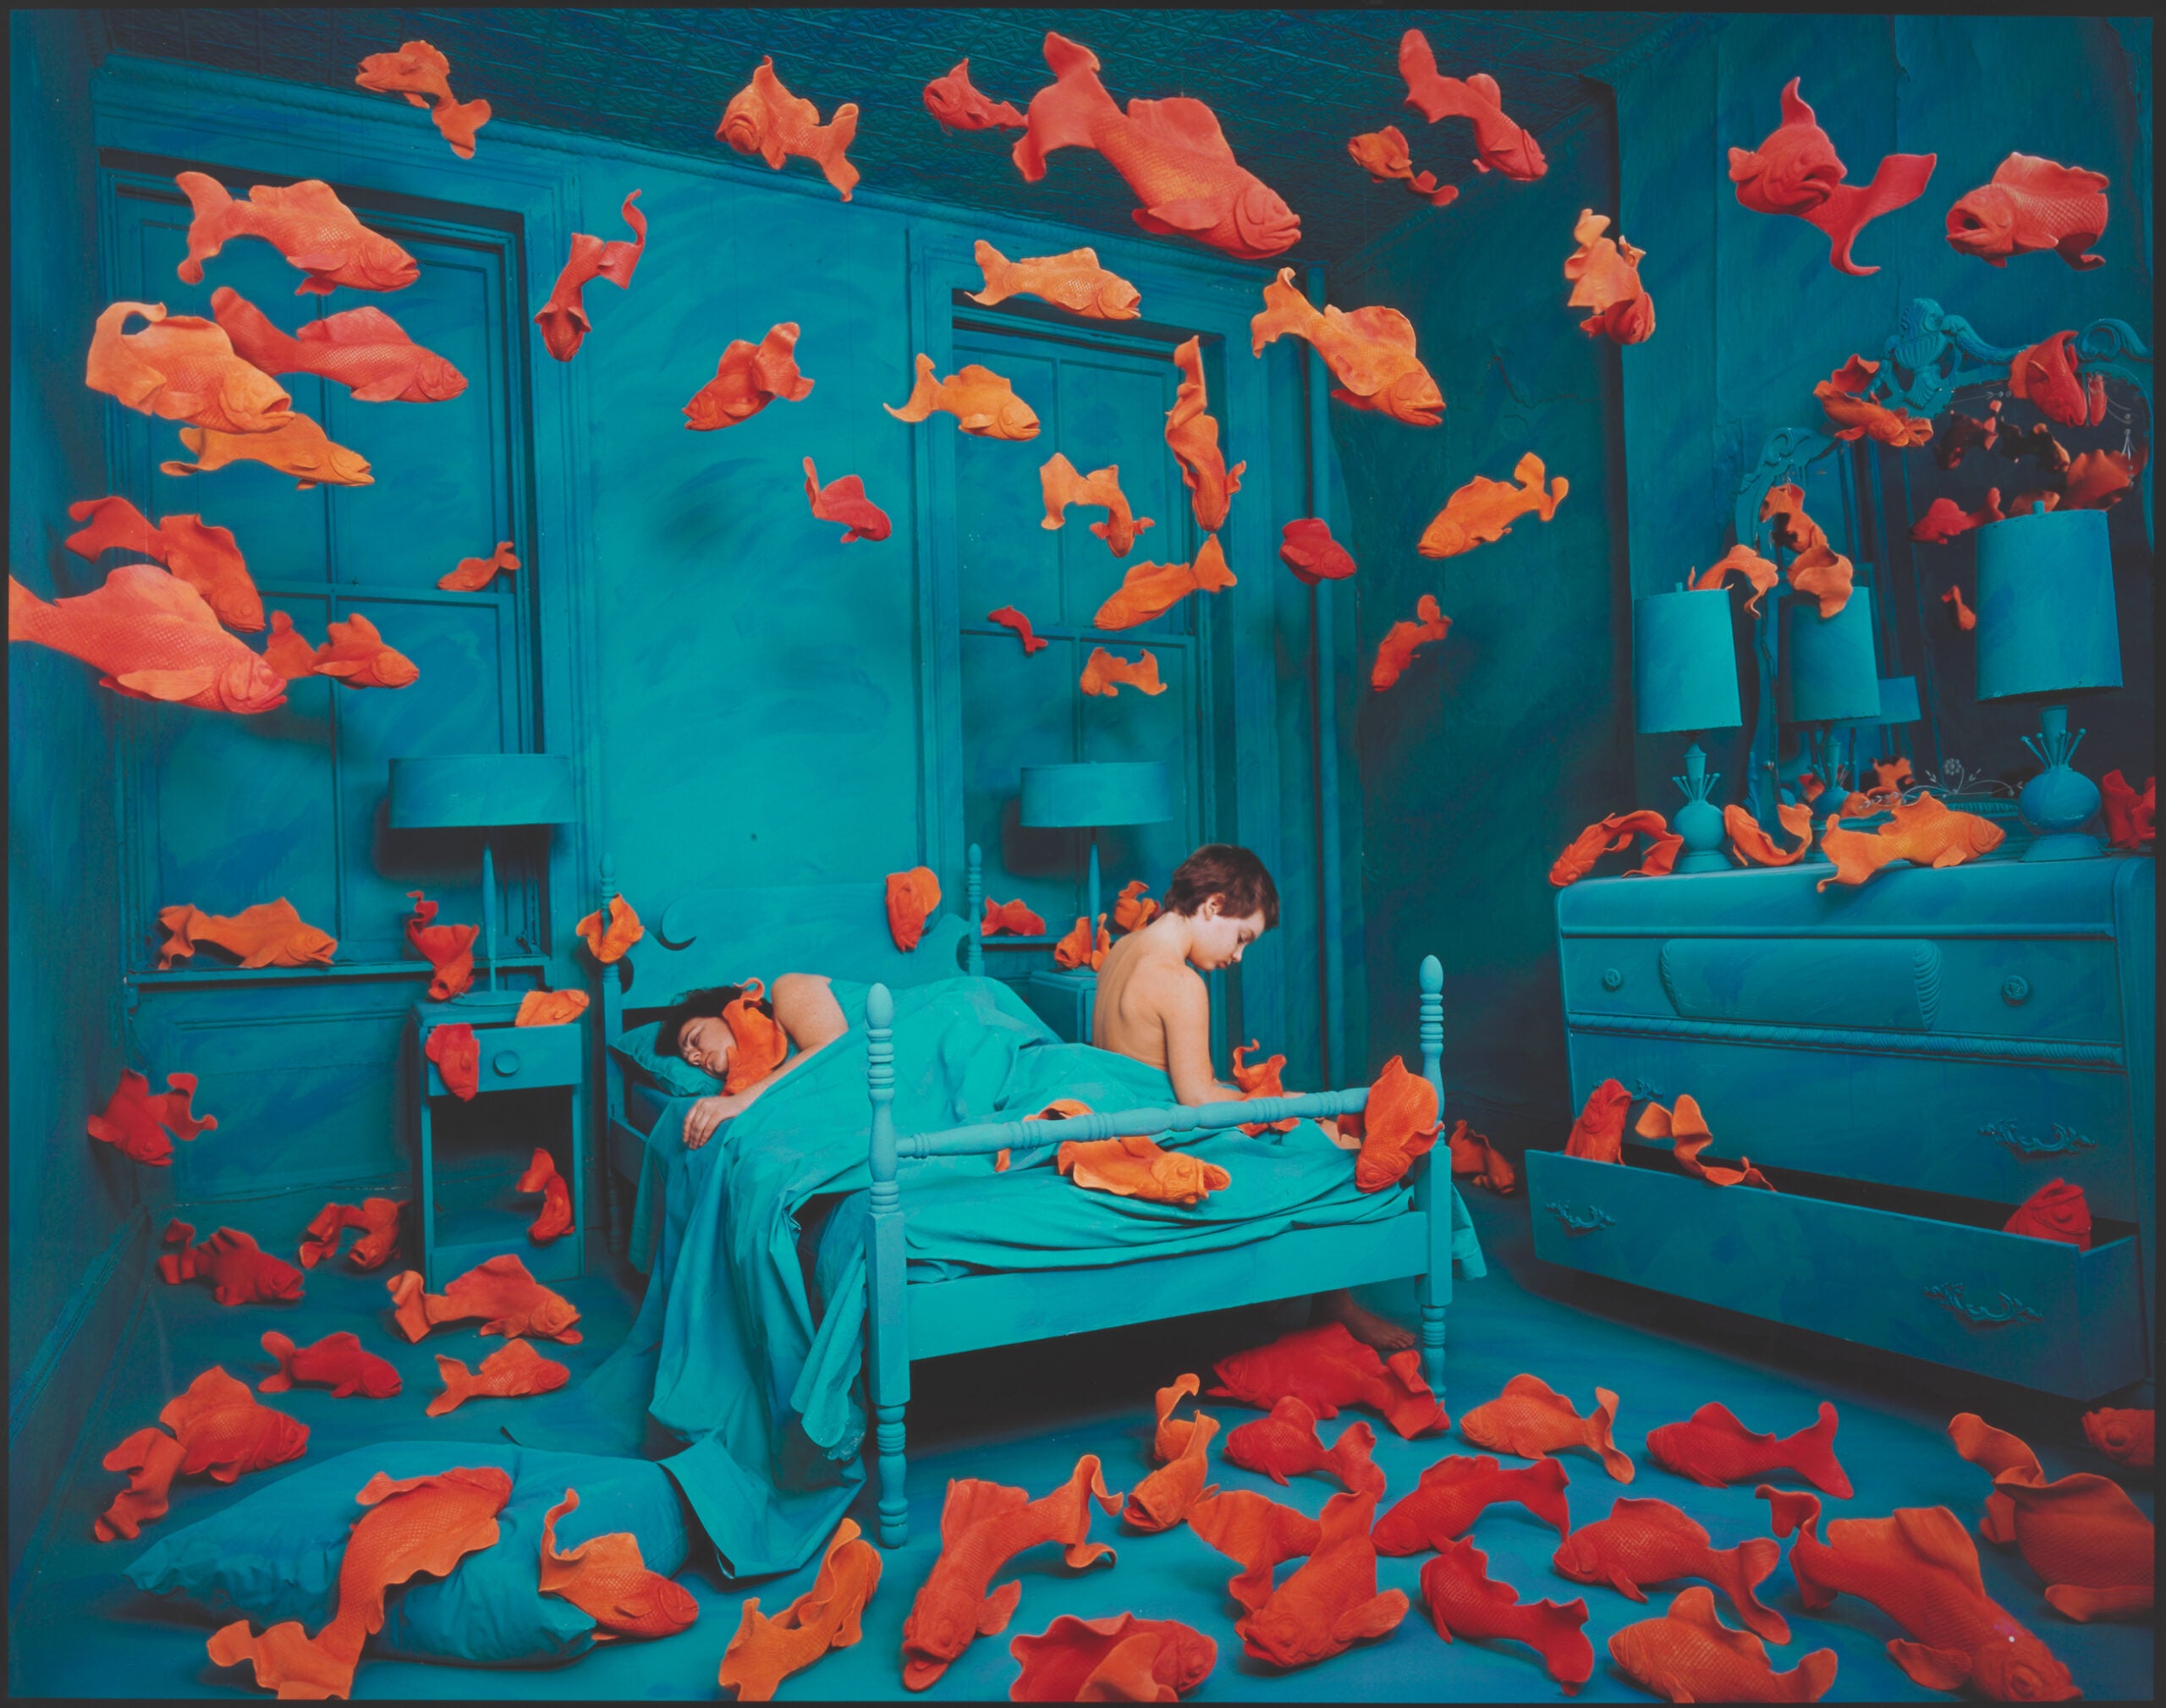 一个孩子在床上被大量的金鱼包围着